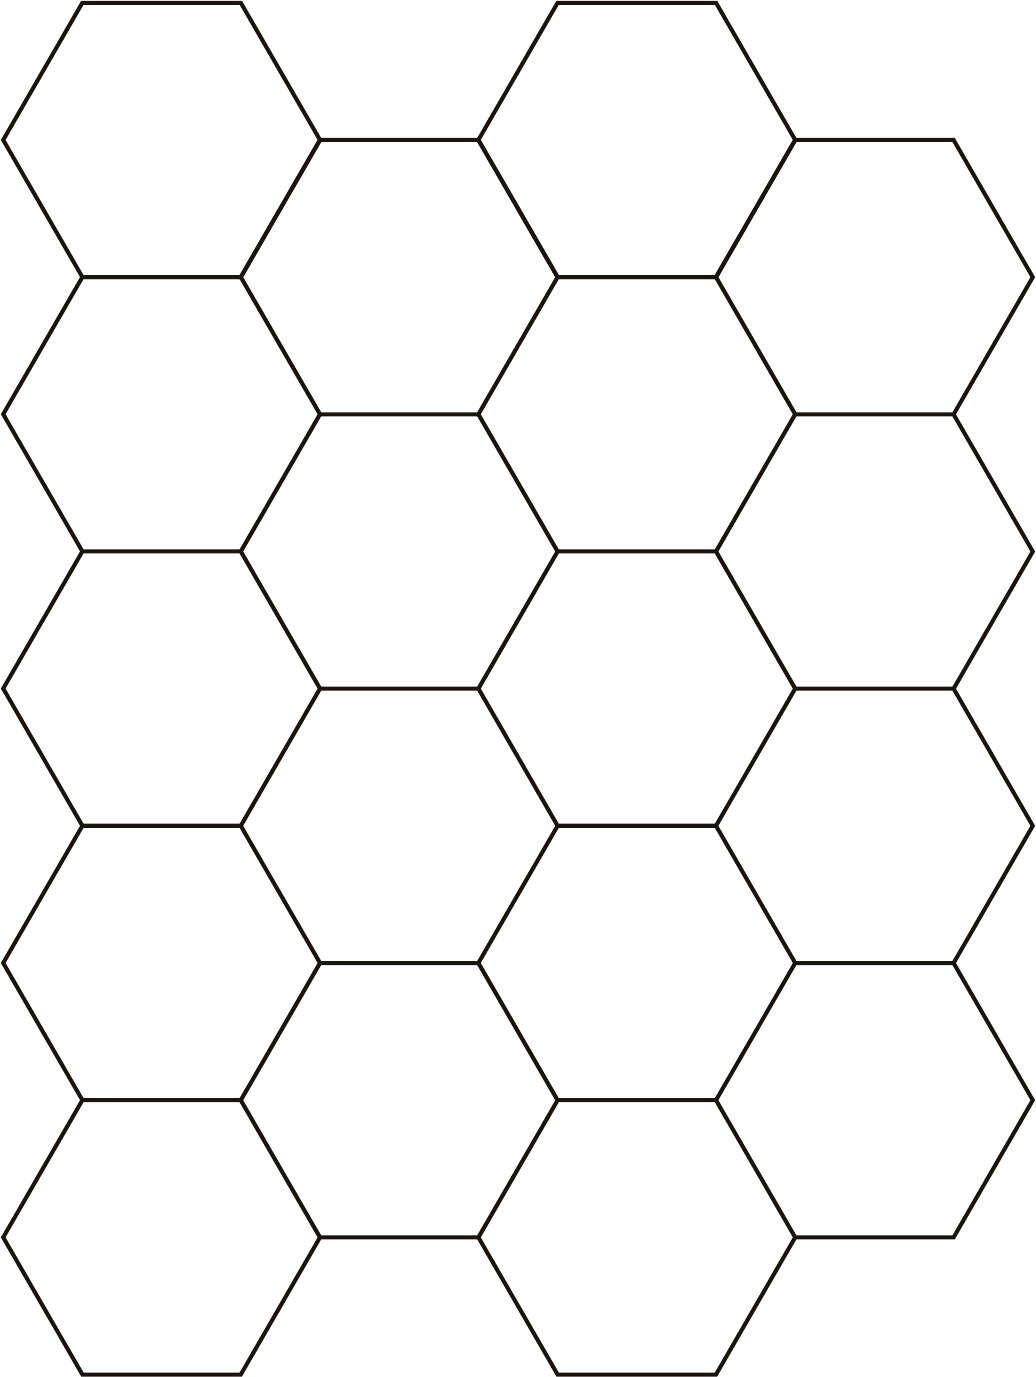 Гексагональная сетка а4